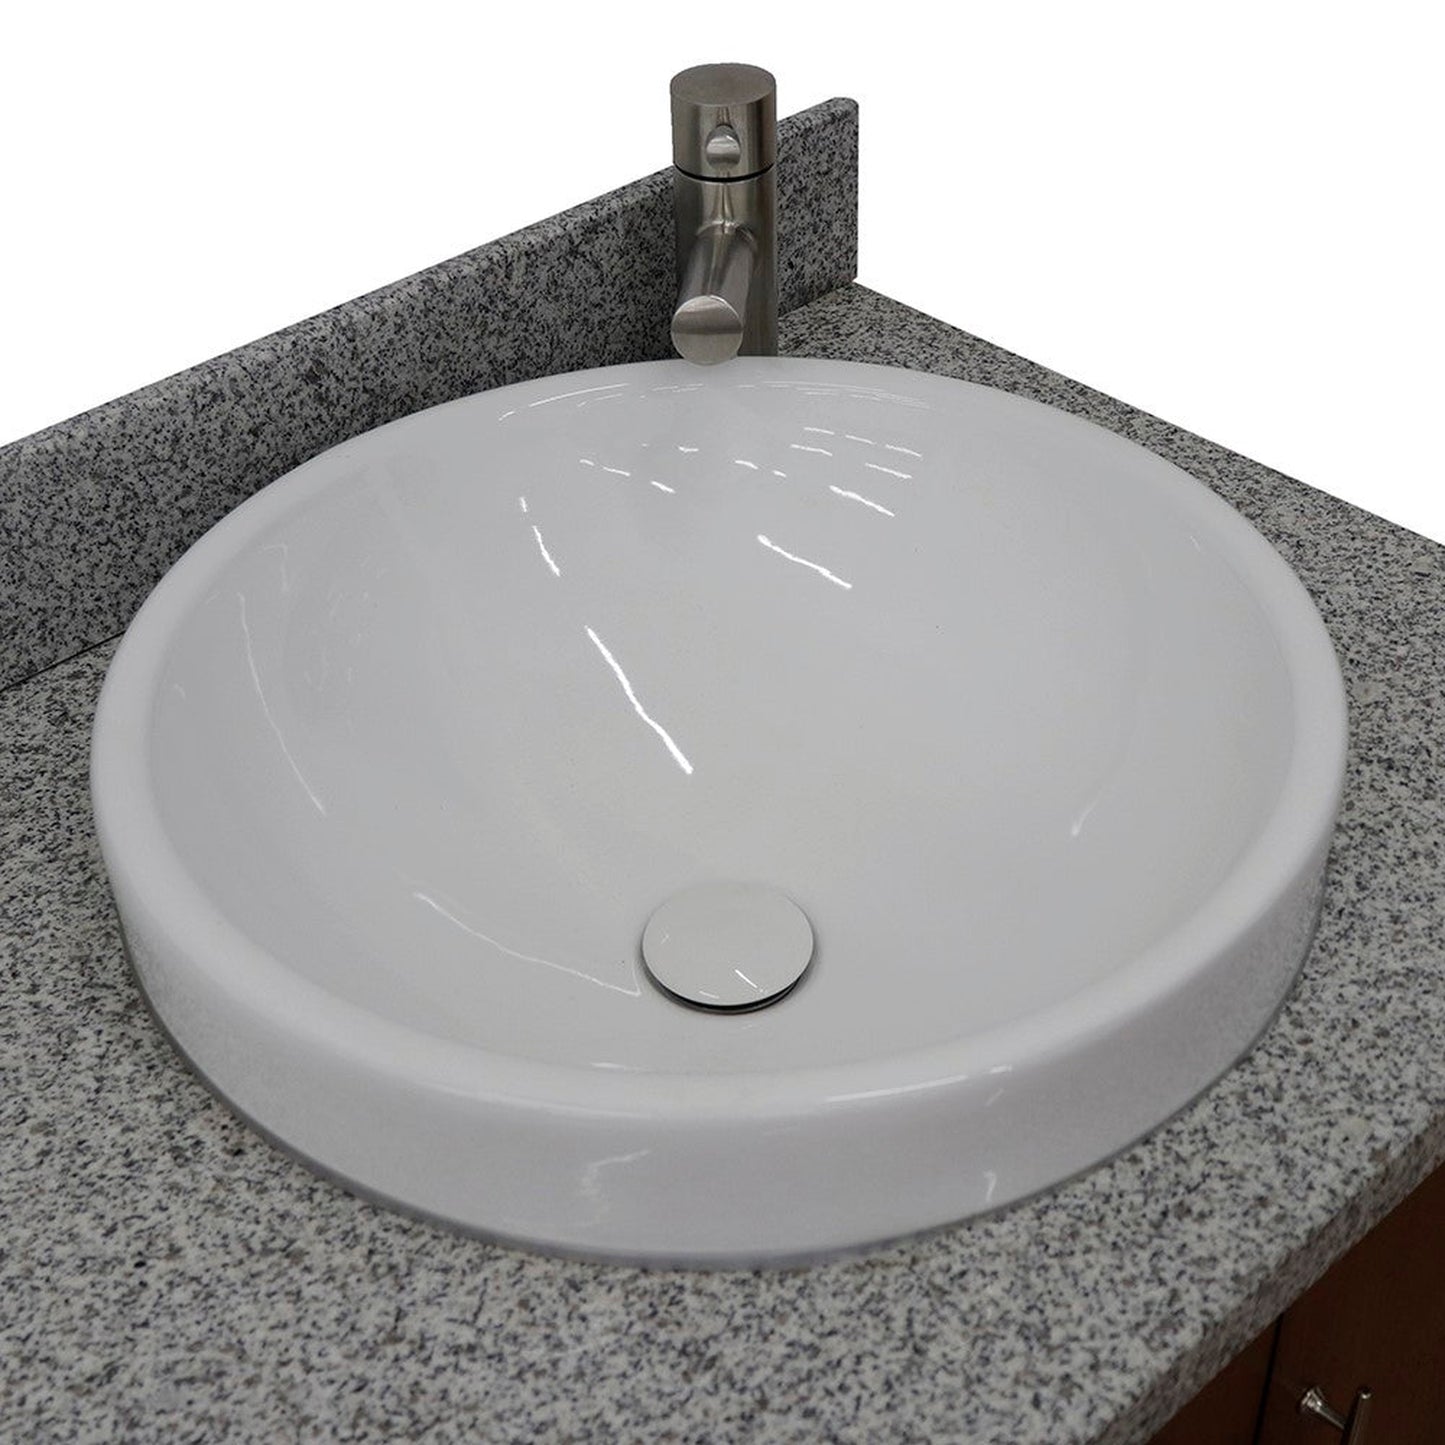 Bellaterra Home MCM 61" 4-Door 3-Drawer Walnut Freestanding Vanity Set With Ceramic Double Vessel Sink and Gray Granite Top